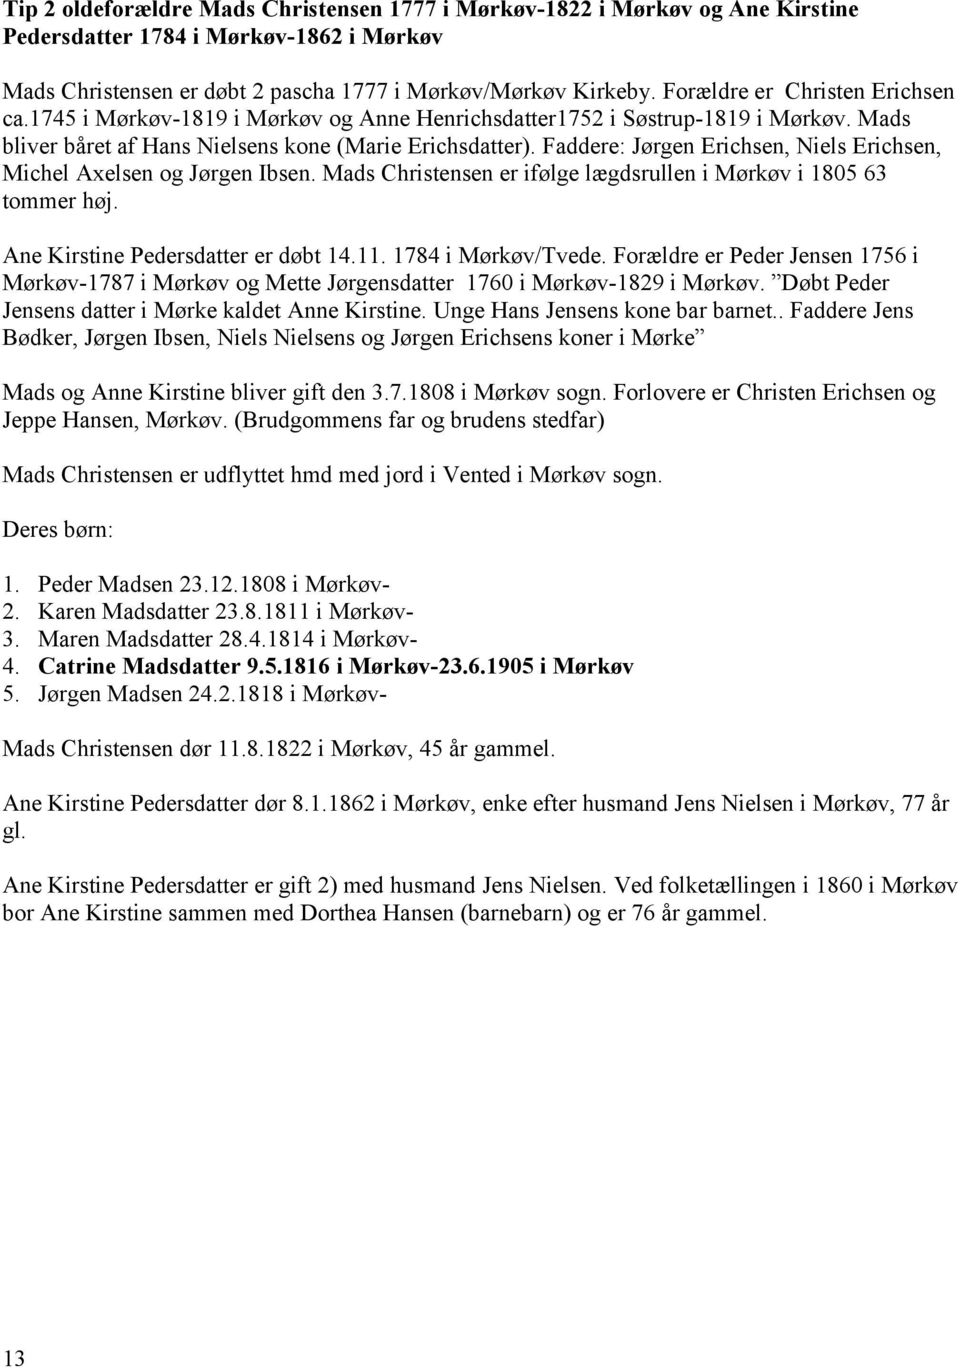 Faddere: Jørgen Erichsen, Niels Erichsen, Michel Axelsen og Jørgen Ibsen. Mads Christensen er ifølge lægdsrullen i Mørkøv i 1805 63 tommer høj. Ane Kirstine Pedersdatter er døbt 14.11.